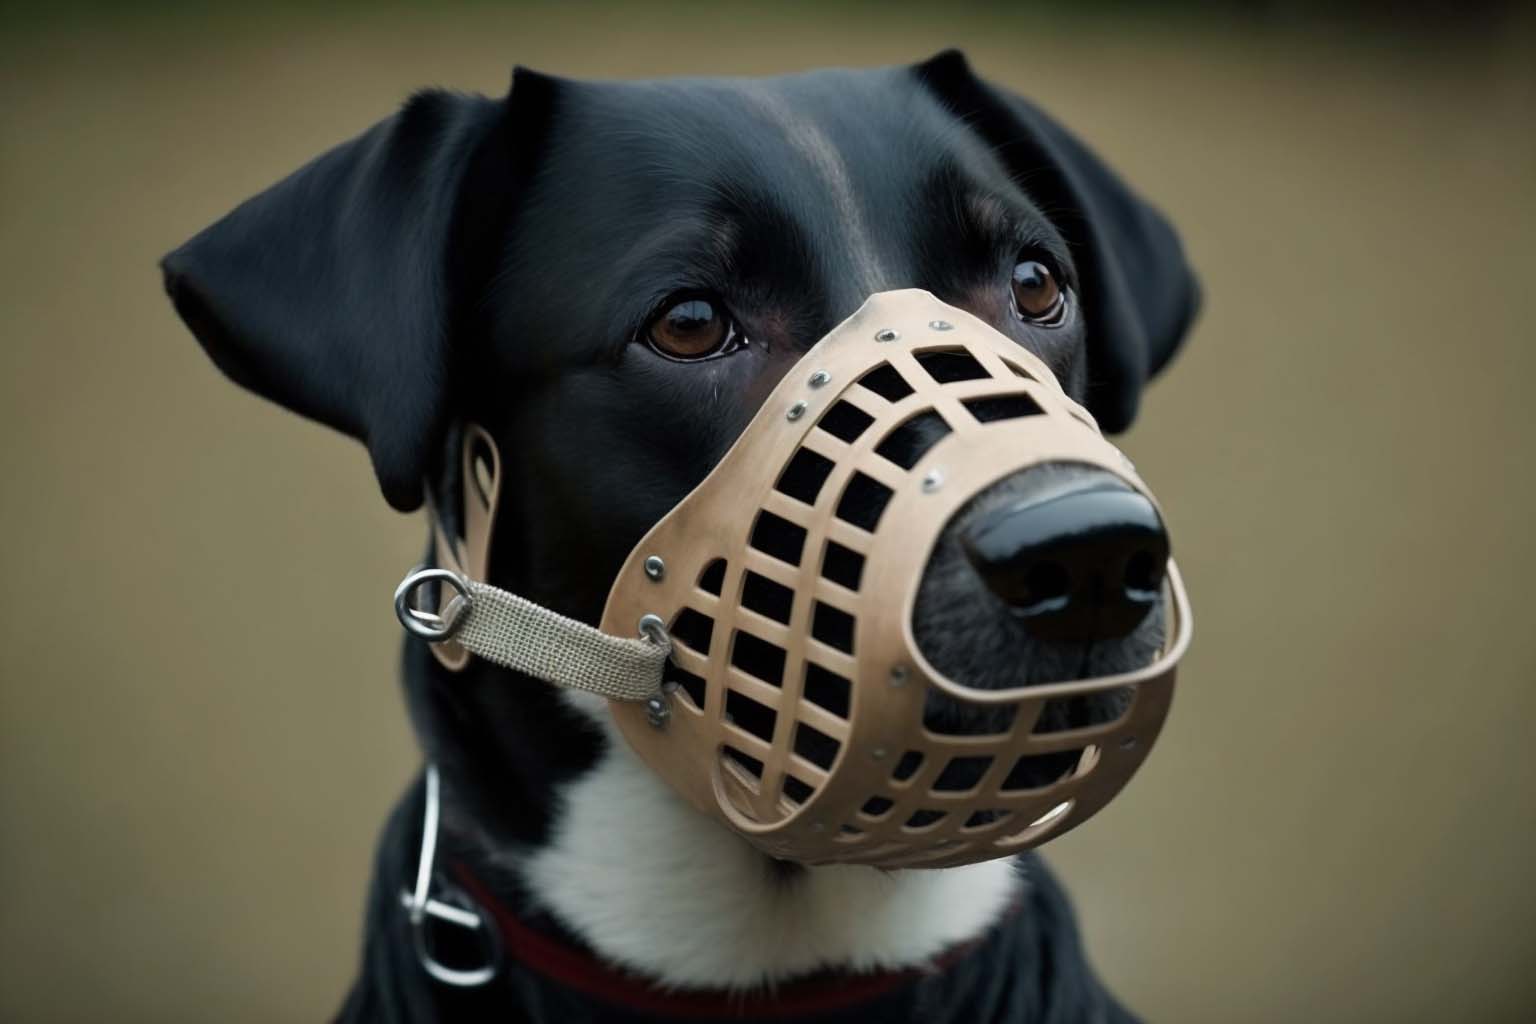 dog wearing a muzzle